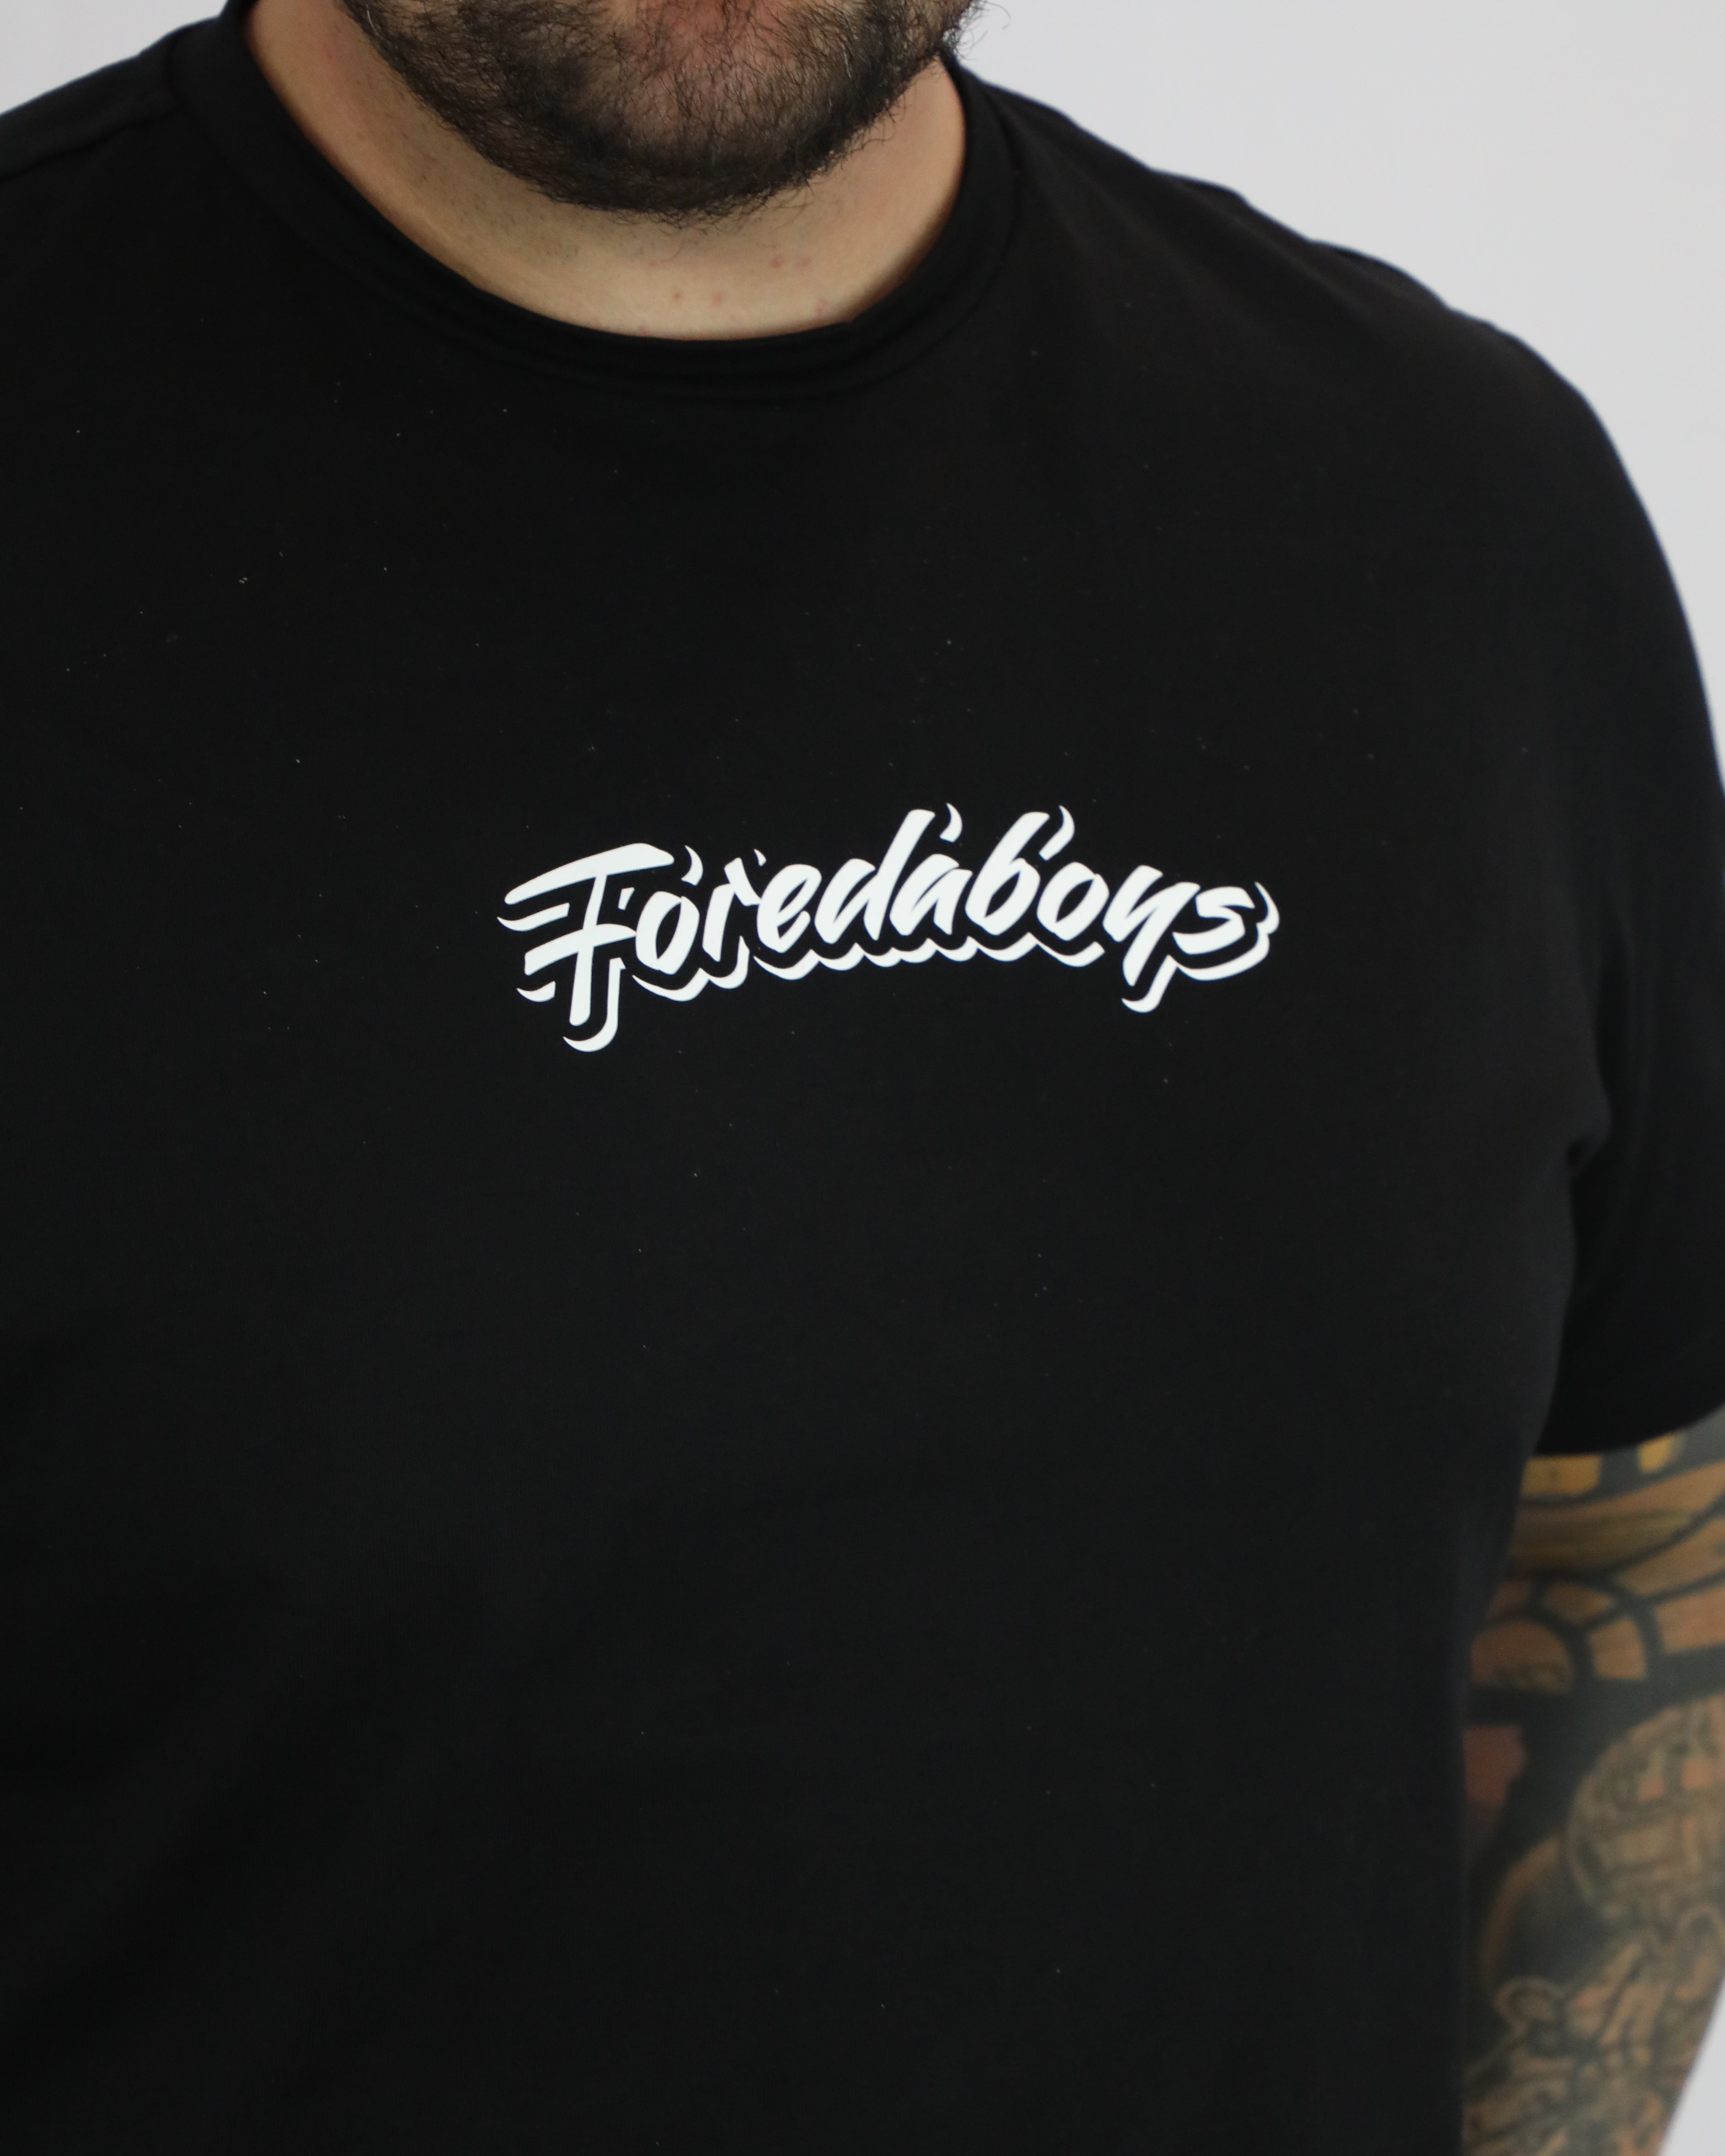 The Original Foredaboys T Shirt